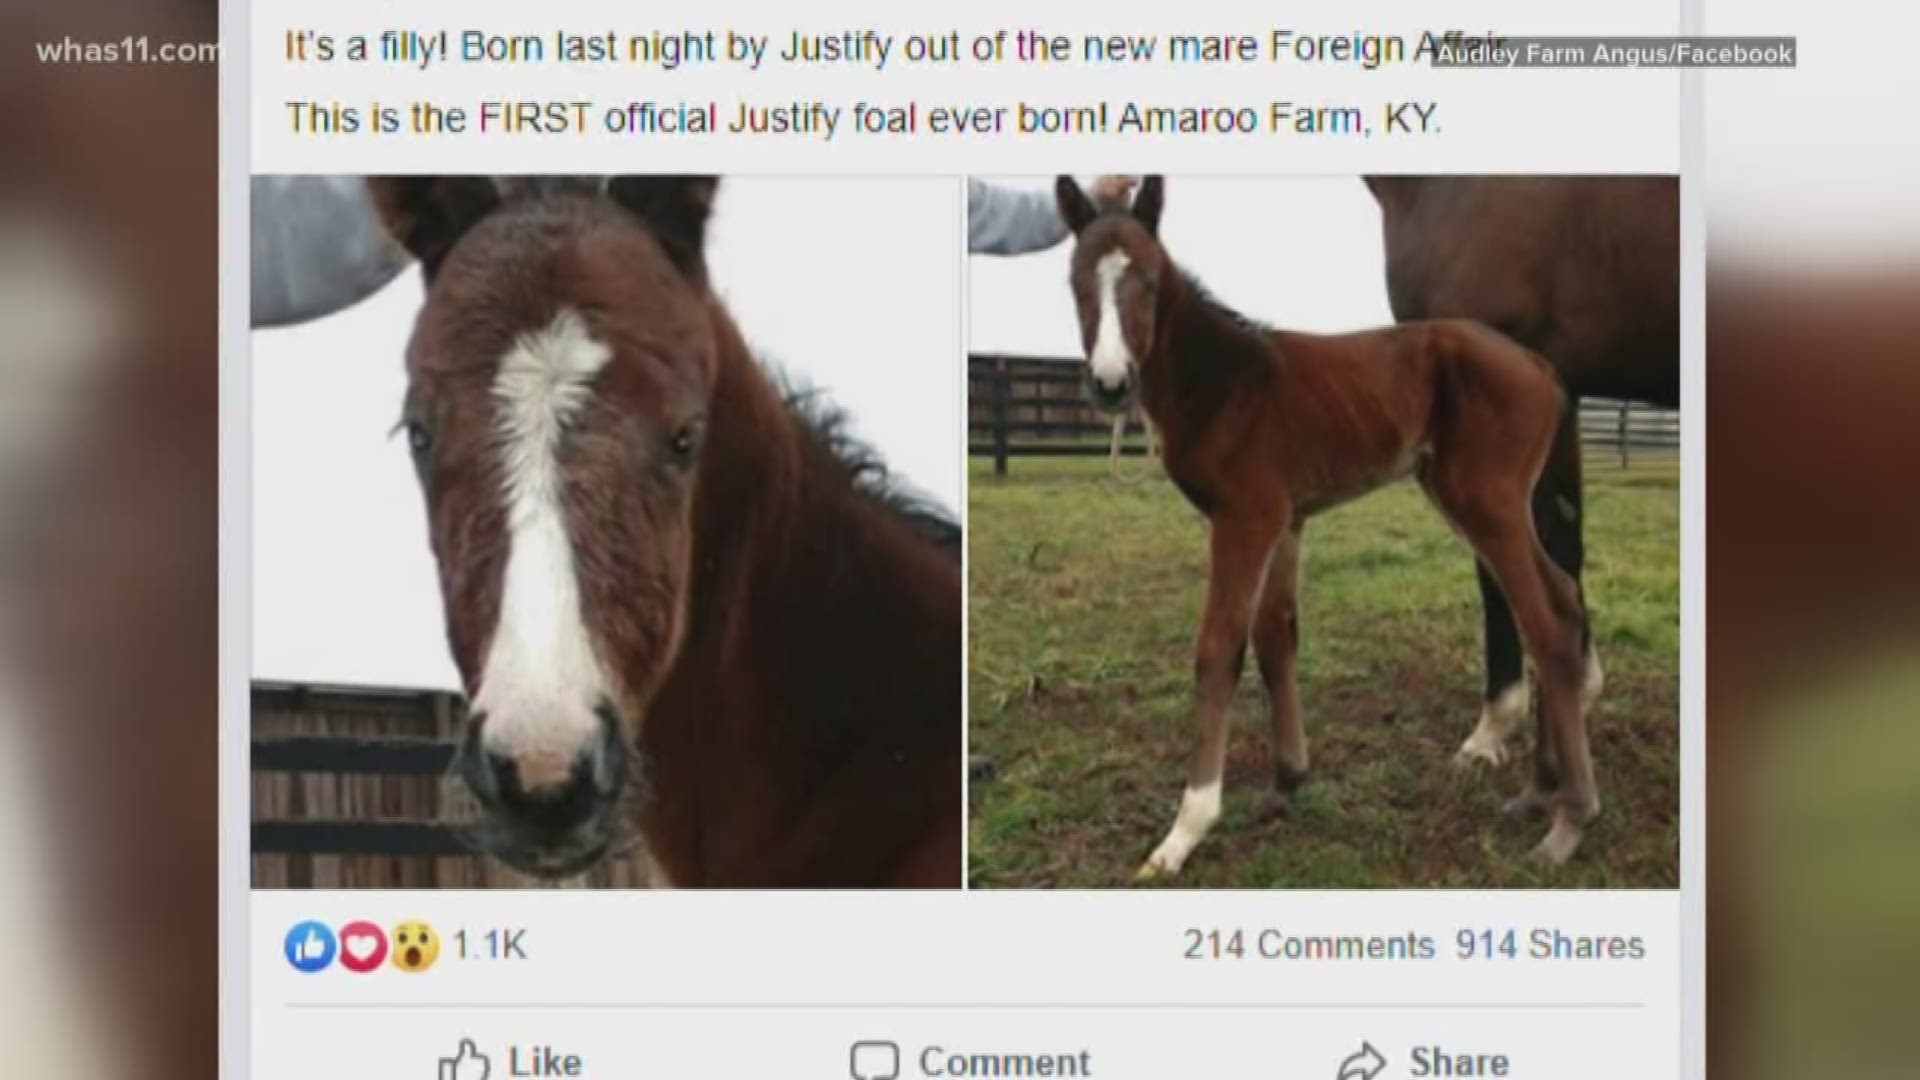 The filly was born Jan. 3, 2020 at Amaroo Farm near Lexington.